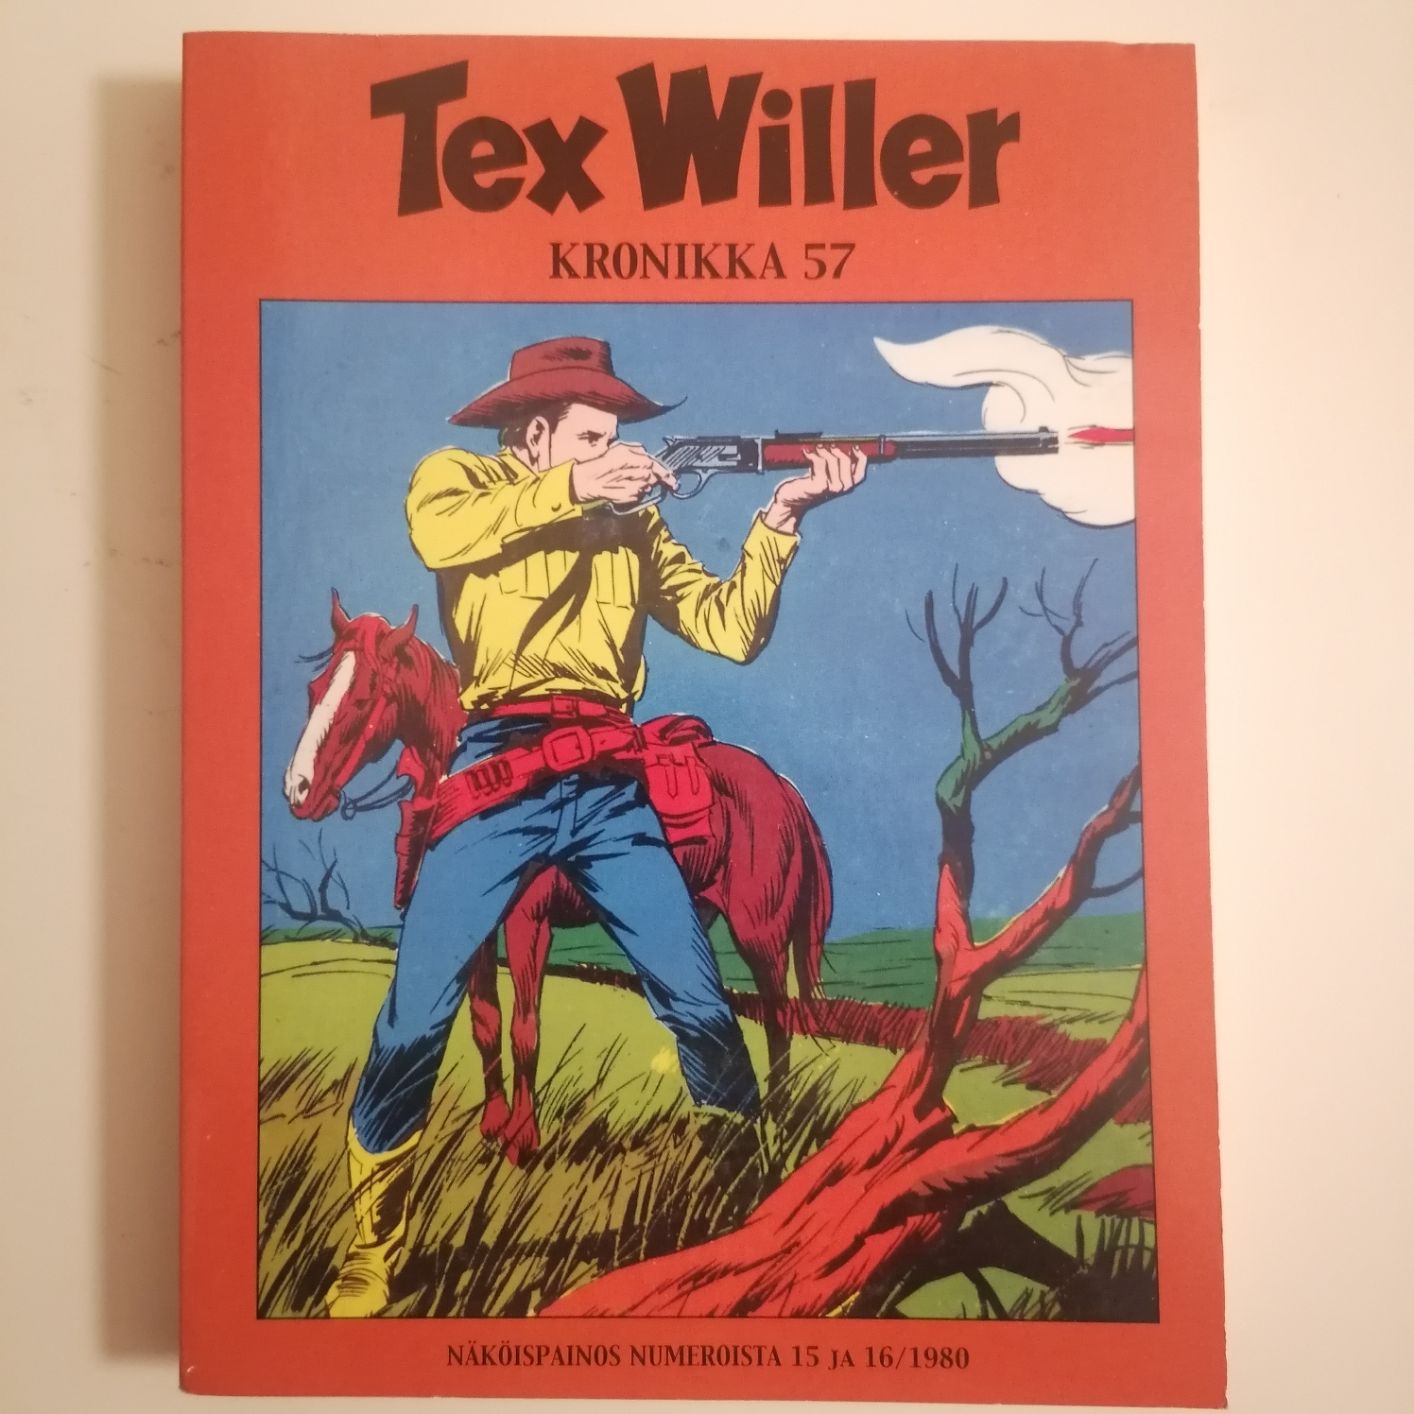 TEX WILLER Kronikka 57 siistikuntoinen ja lukematon näköispainos numeroista 15 ja 16 hinta 5,50euroa